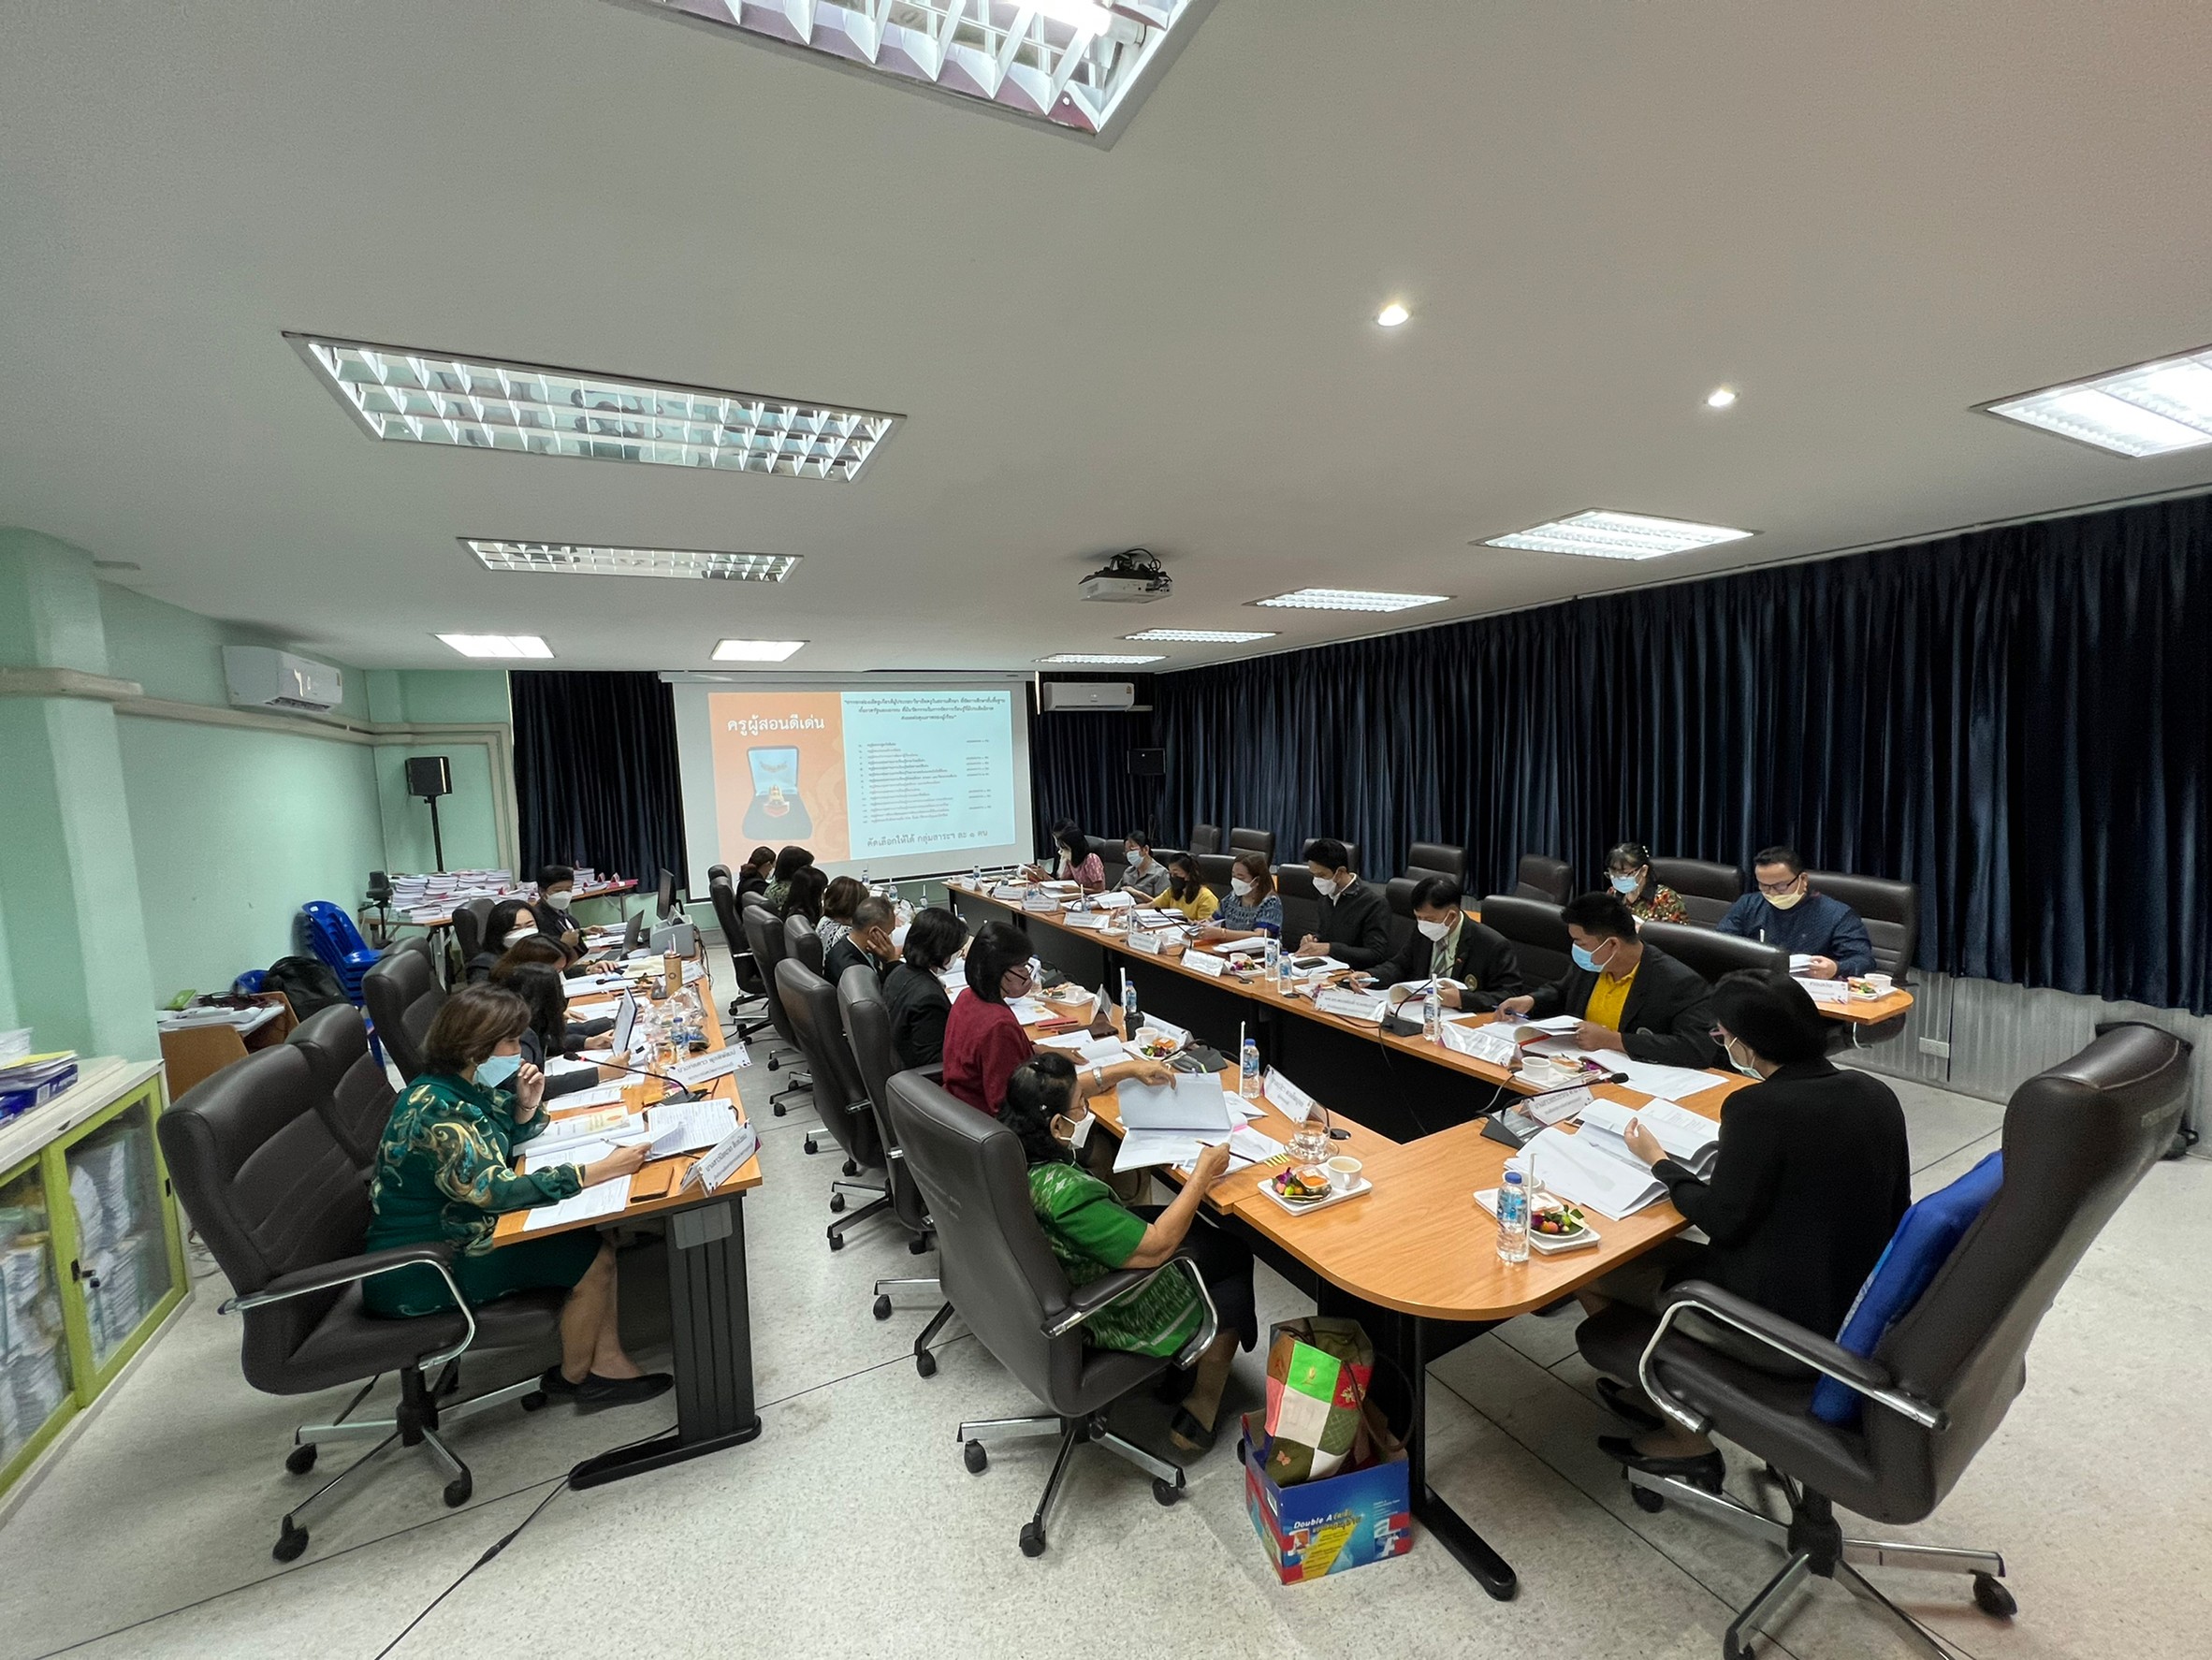 สำนักงานศึกษาธิการจังหวัดกาญจนบุรี จัดประชุมคณะกรรมการพิจารณาคัดเลือกผู้ประกอบวิชาชีพทางการศึกษา เพื่อรับรางวัลของคุรุสภา ประจำปี 2565